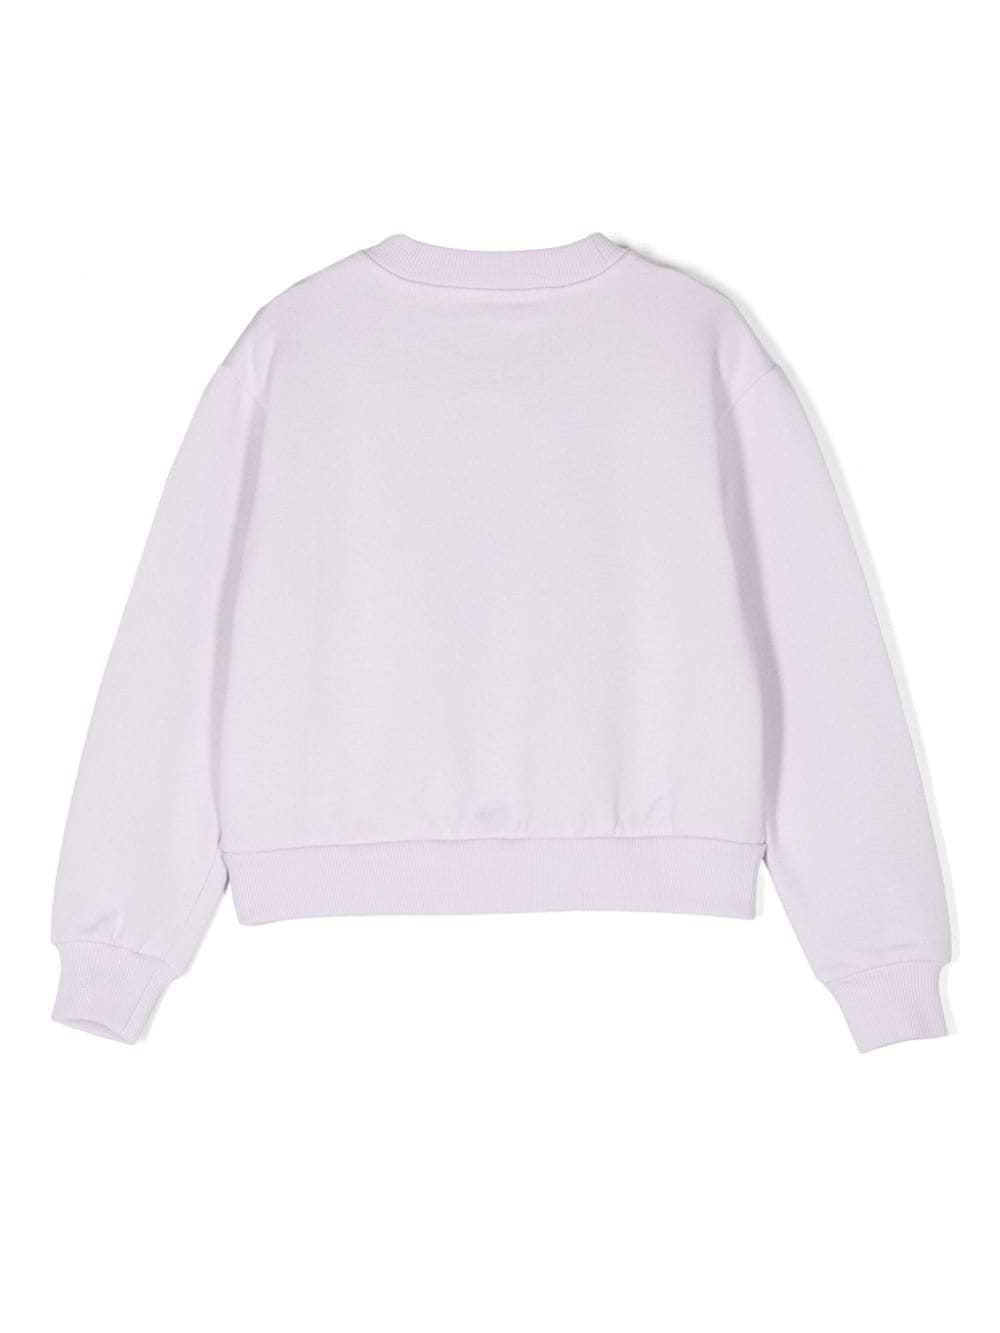 Sweatshirt for girls in lavender cotton